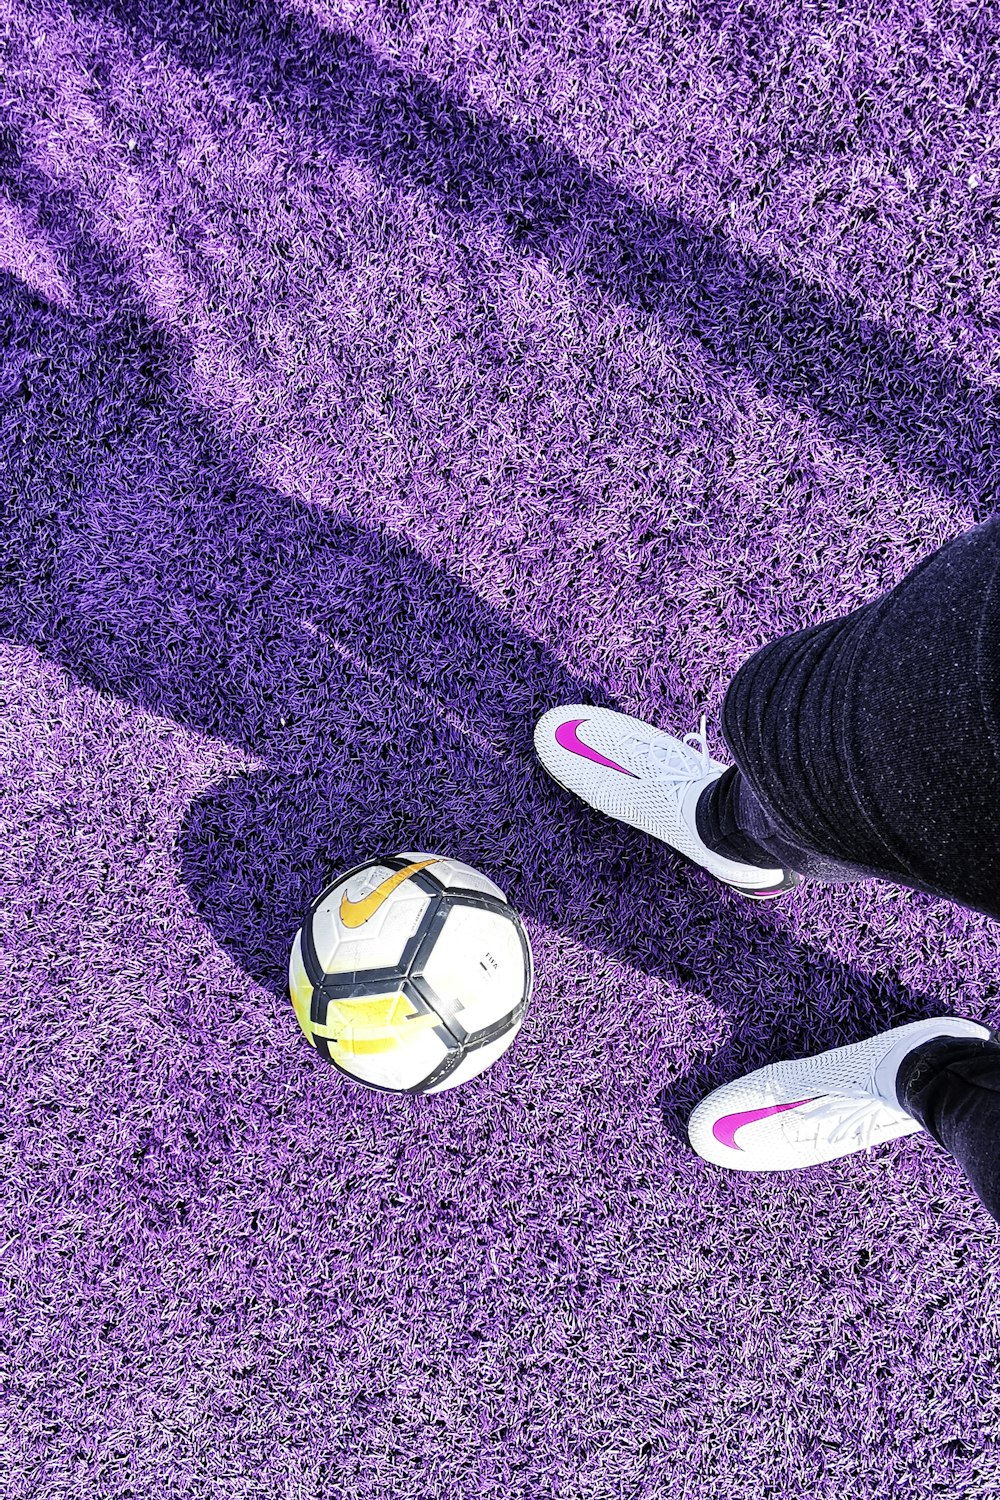 Los pies de una persona con una pelota en una alfombra púrpura